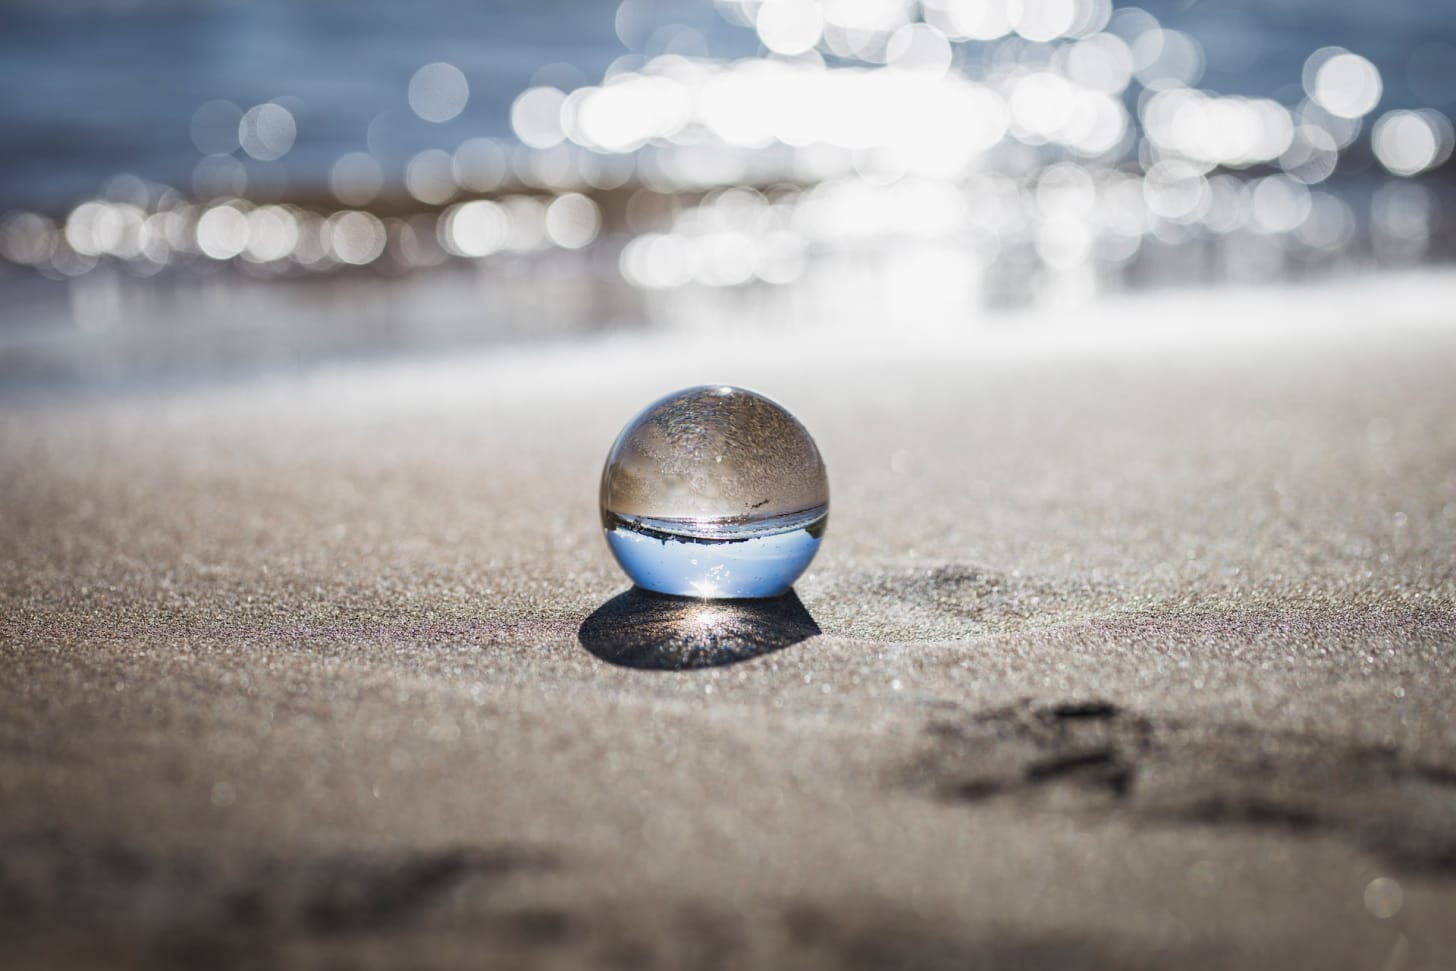 Piccola bocca di vetro appoggiata su una spiaggia, con lo sfondo del mare sfuocato e luminoso. Dentro alla sfera si riflette il paesaggio retrostante della costa.